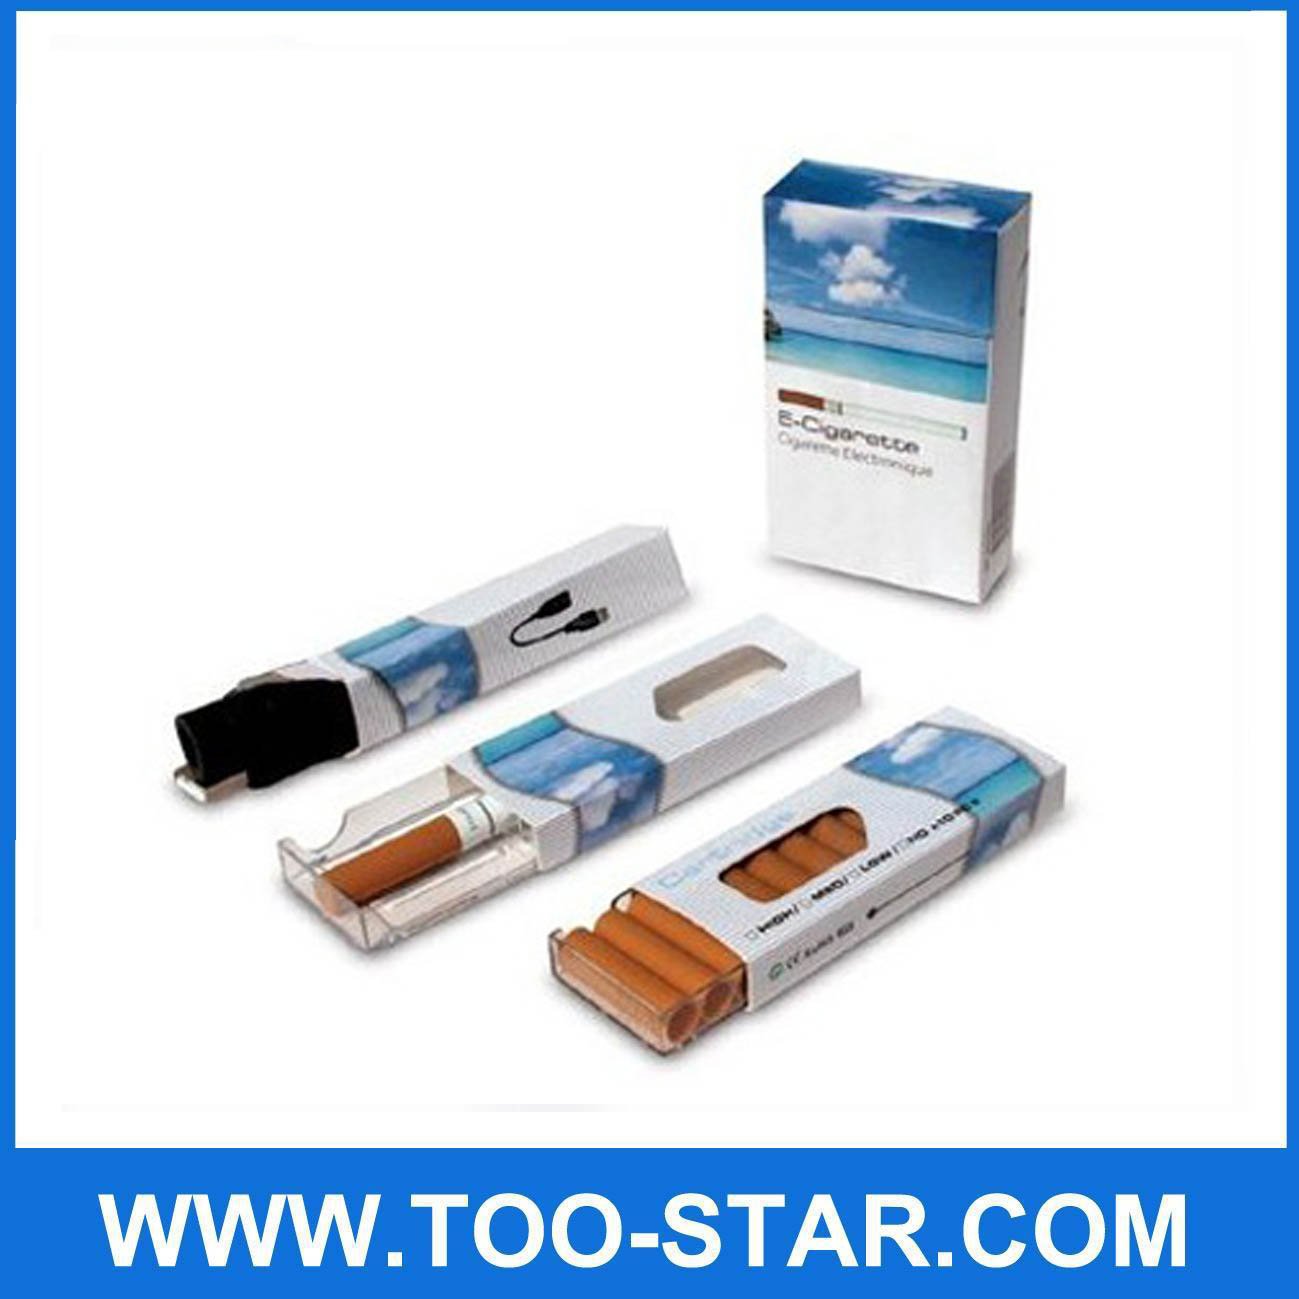 Electronic_Cigarettes_E_cigarette_Health_Cigarette.jpg